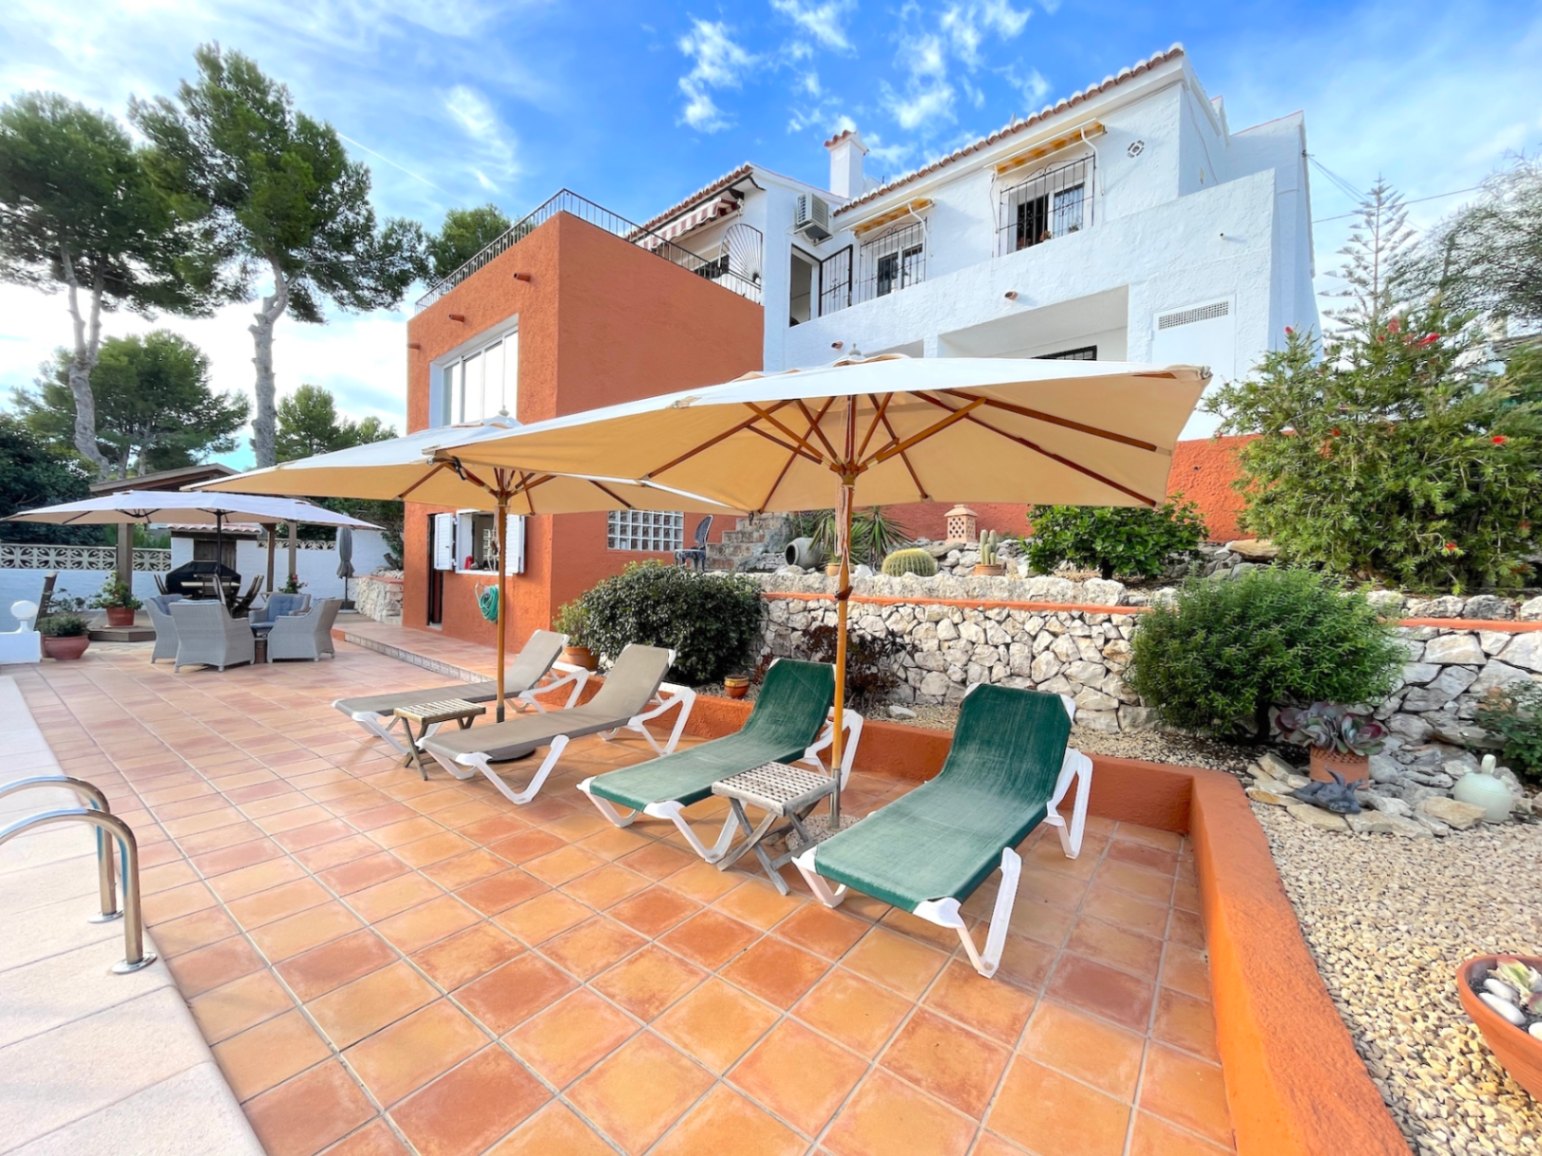 Property for sale: 5 bed villa in Fanadix | Moraira